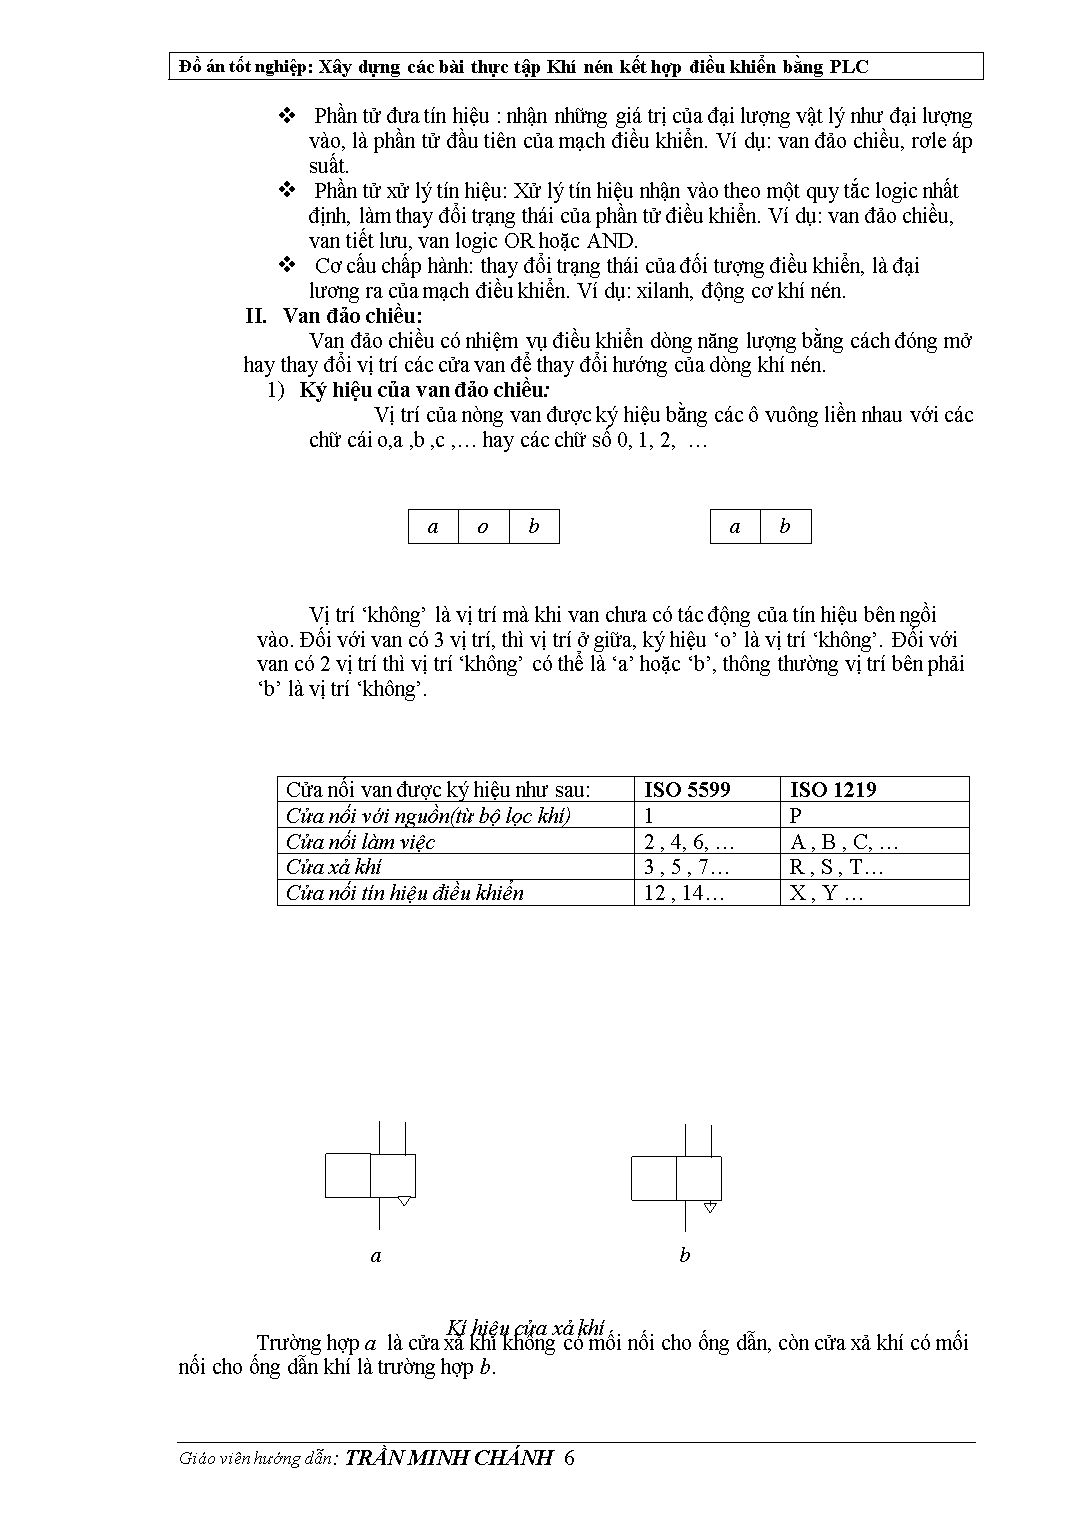 Đồ án Xây dựng các bài tập khí nén kết hợp điều khiển bằng PLC trang 6